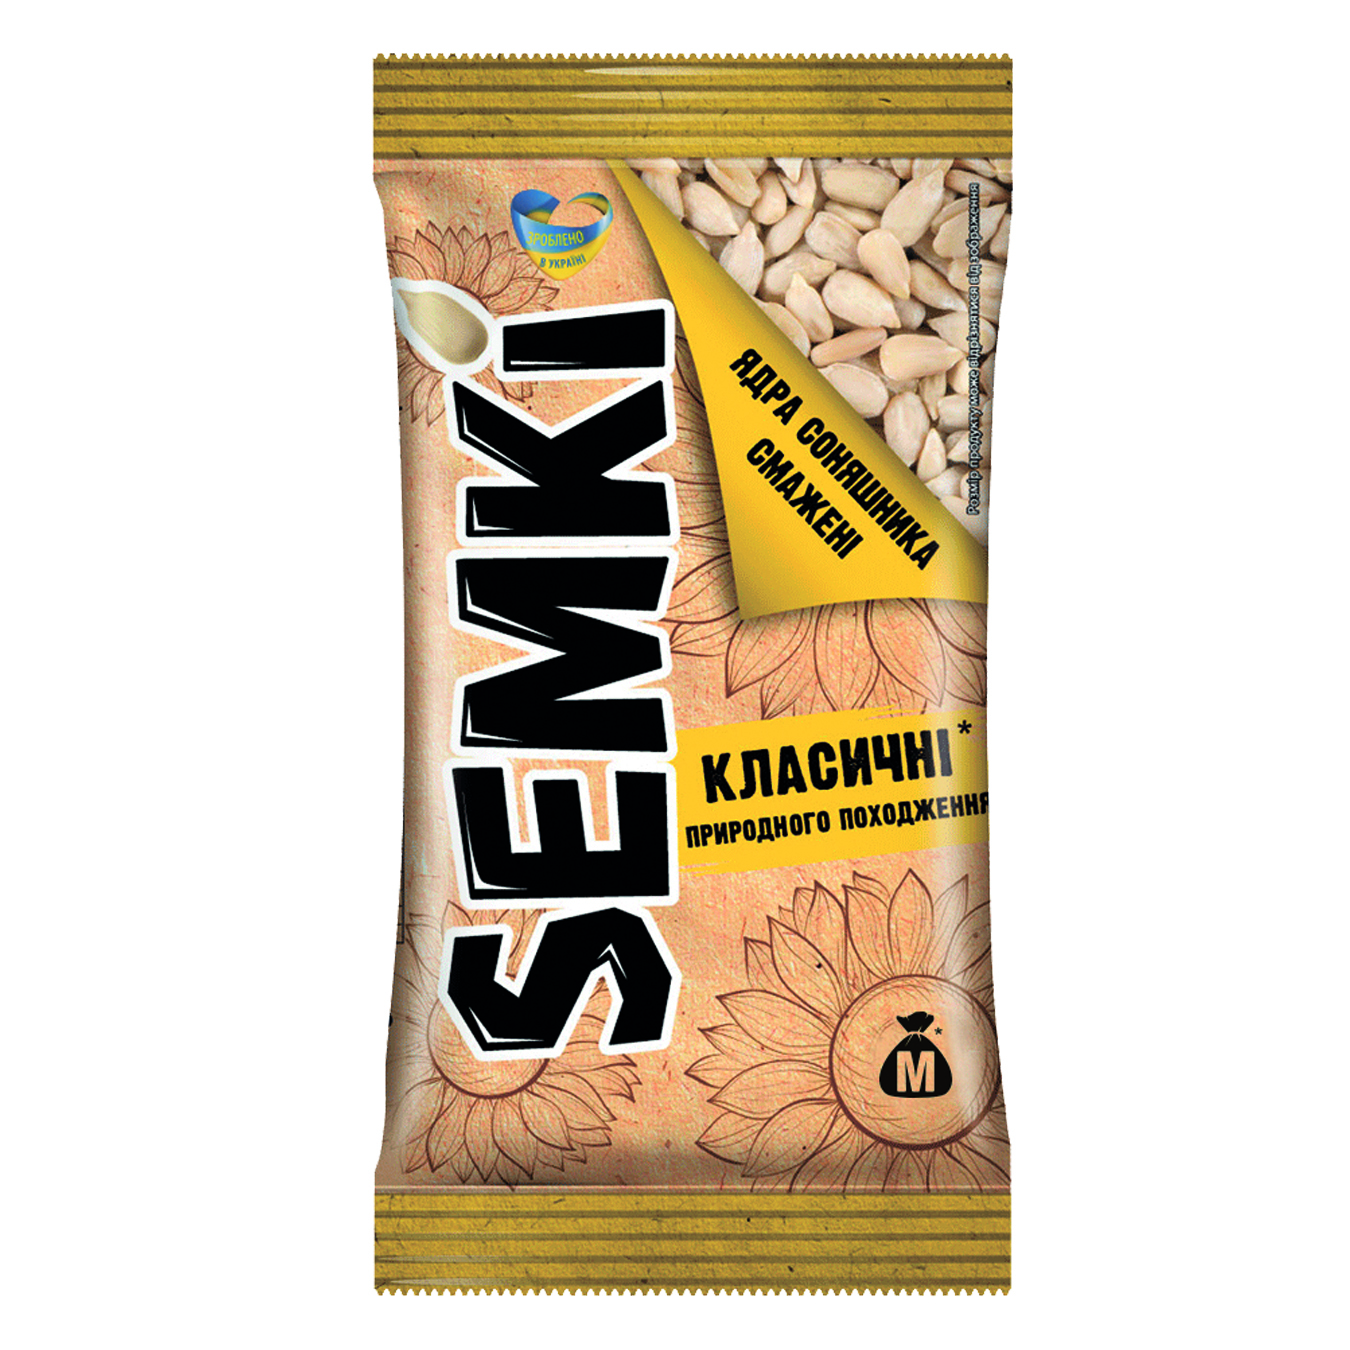 Semki cleaned fried sunflower seeds 50g